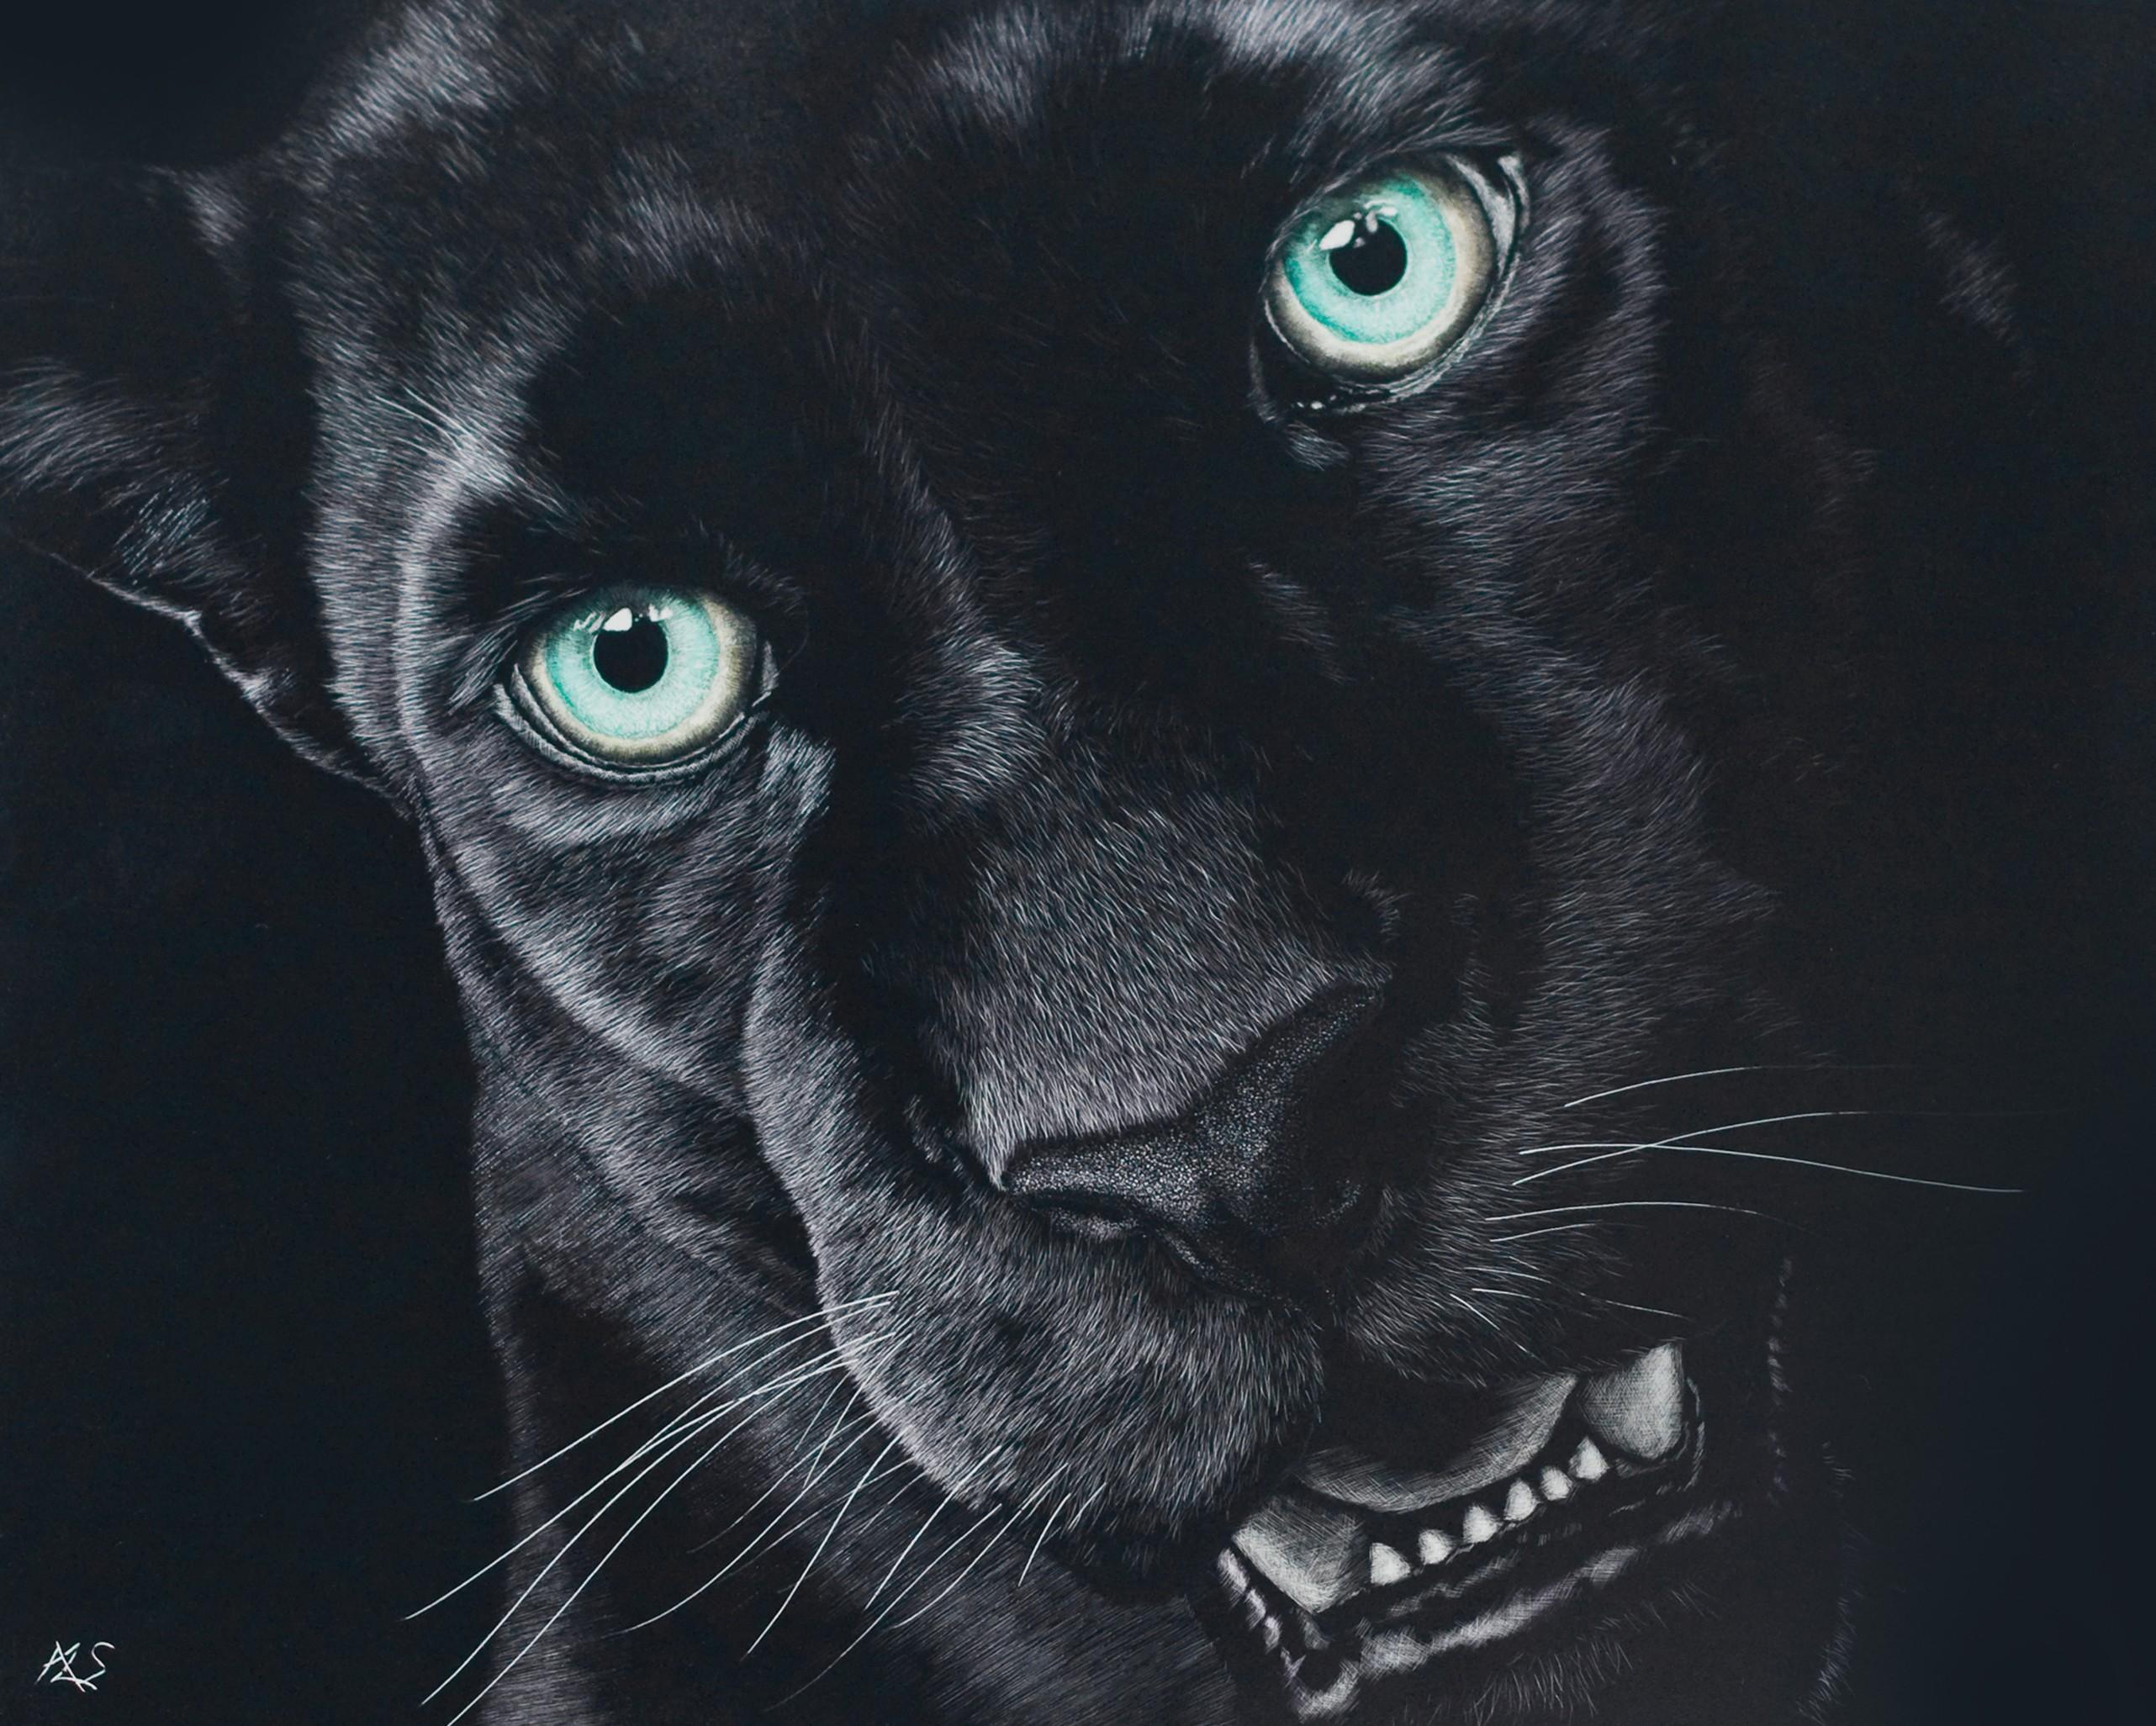  71 Black  Jaguar  Wallpaper  on WallpaperSafari